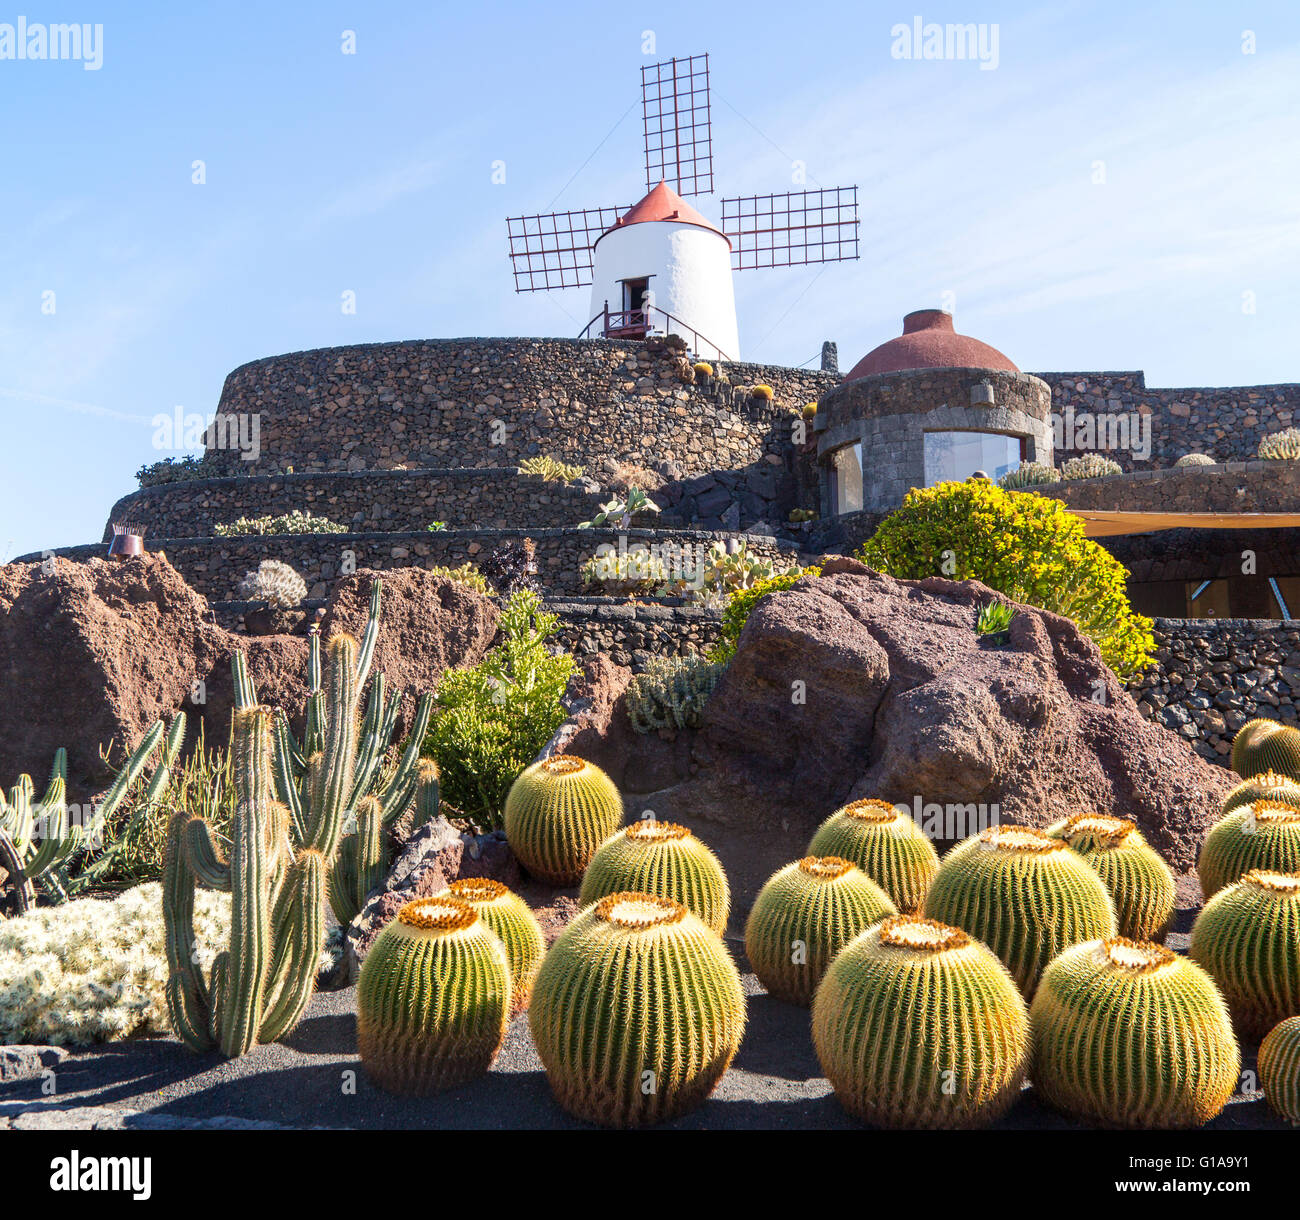 Las plantas de cactus y molino jardín de cactus diseñado por César Manrique, Guatiza. Lanzarote, Islas Canarias, España. Cactaceae Foto de stock